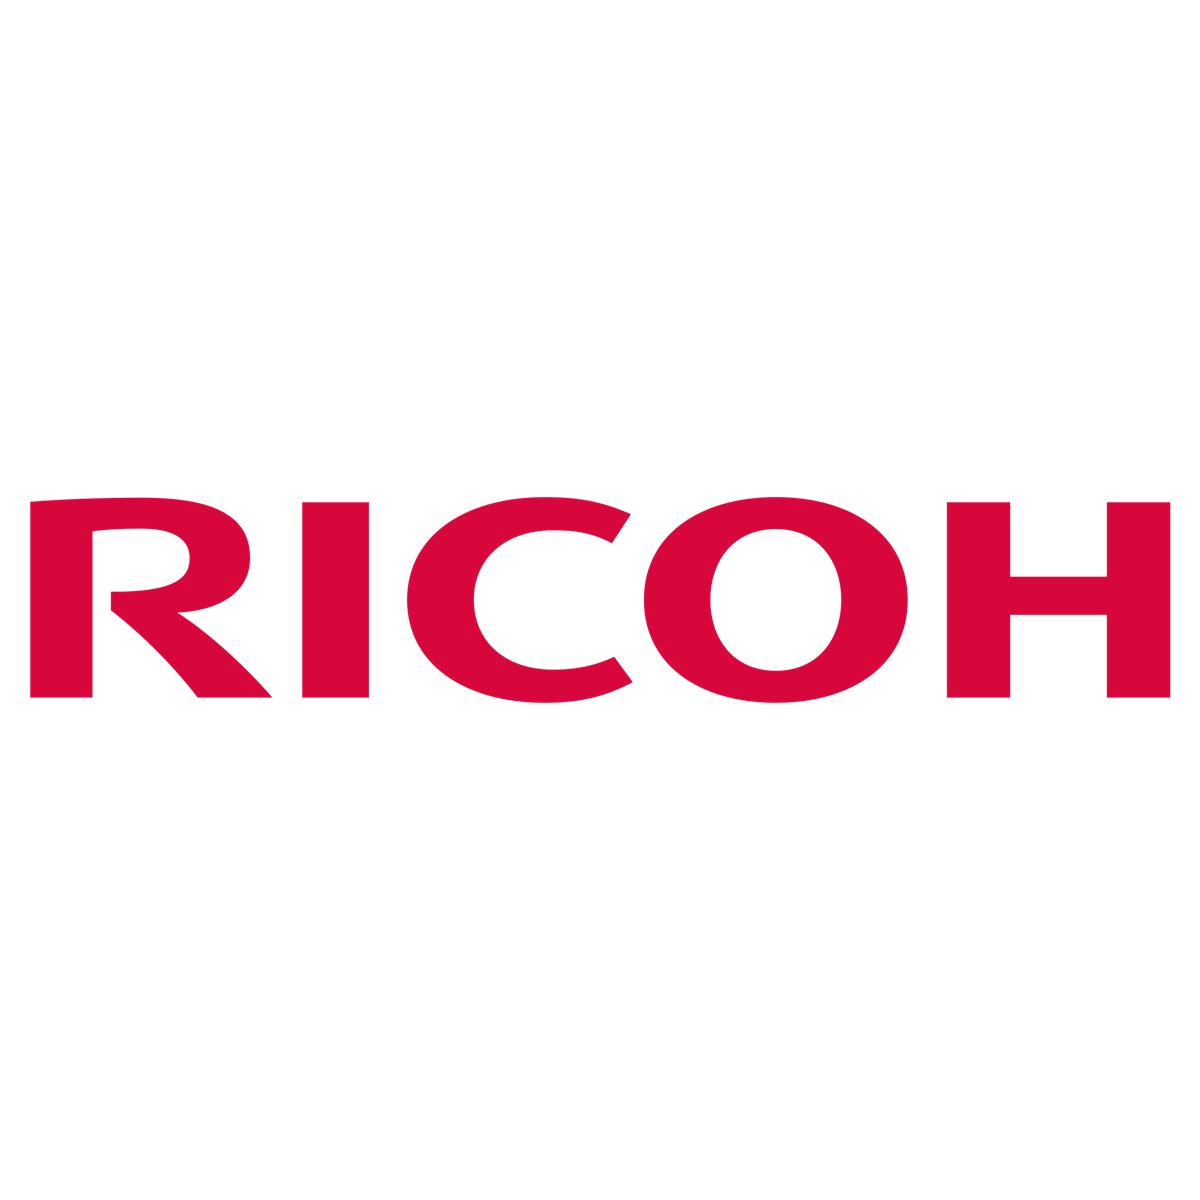 Ricoh Development Unit